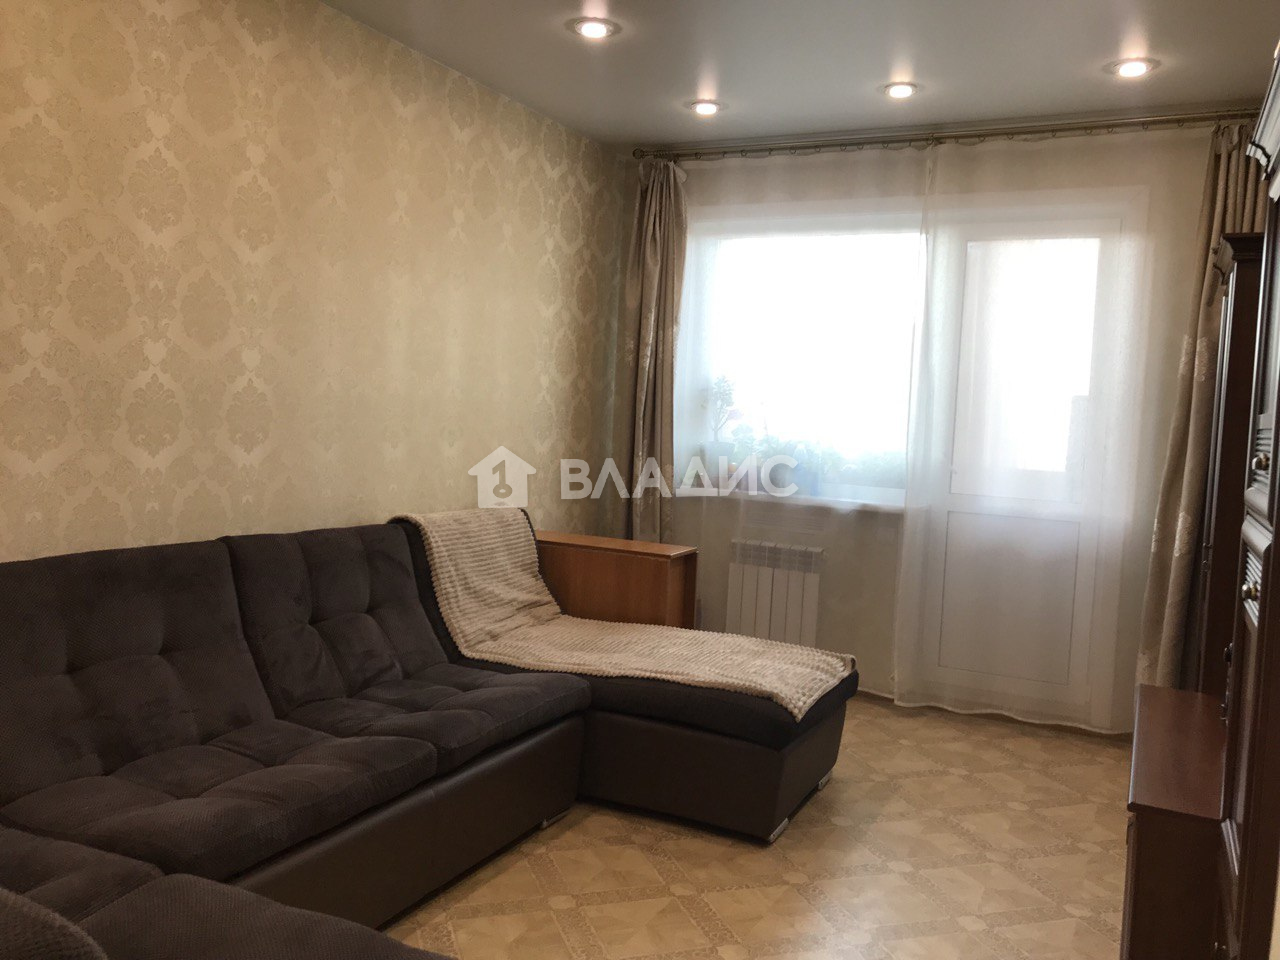 Авито черногорск недвижимость продажа квартиры 3 комнатные с фото